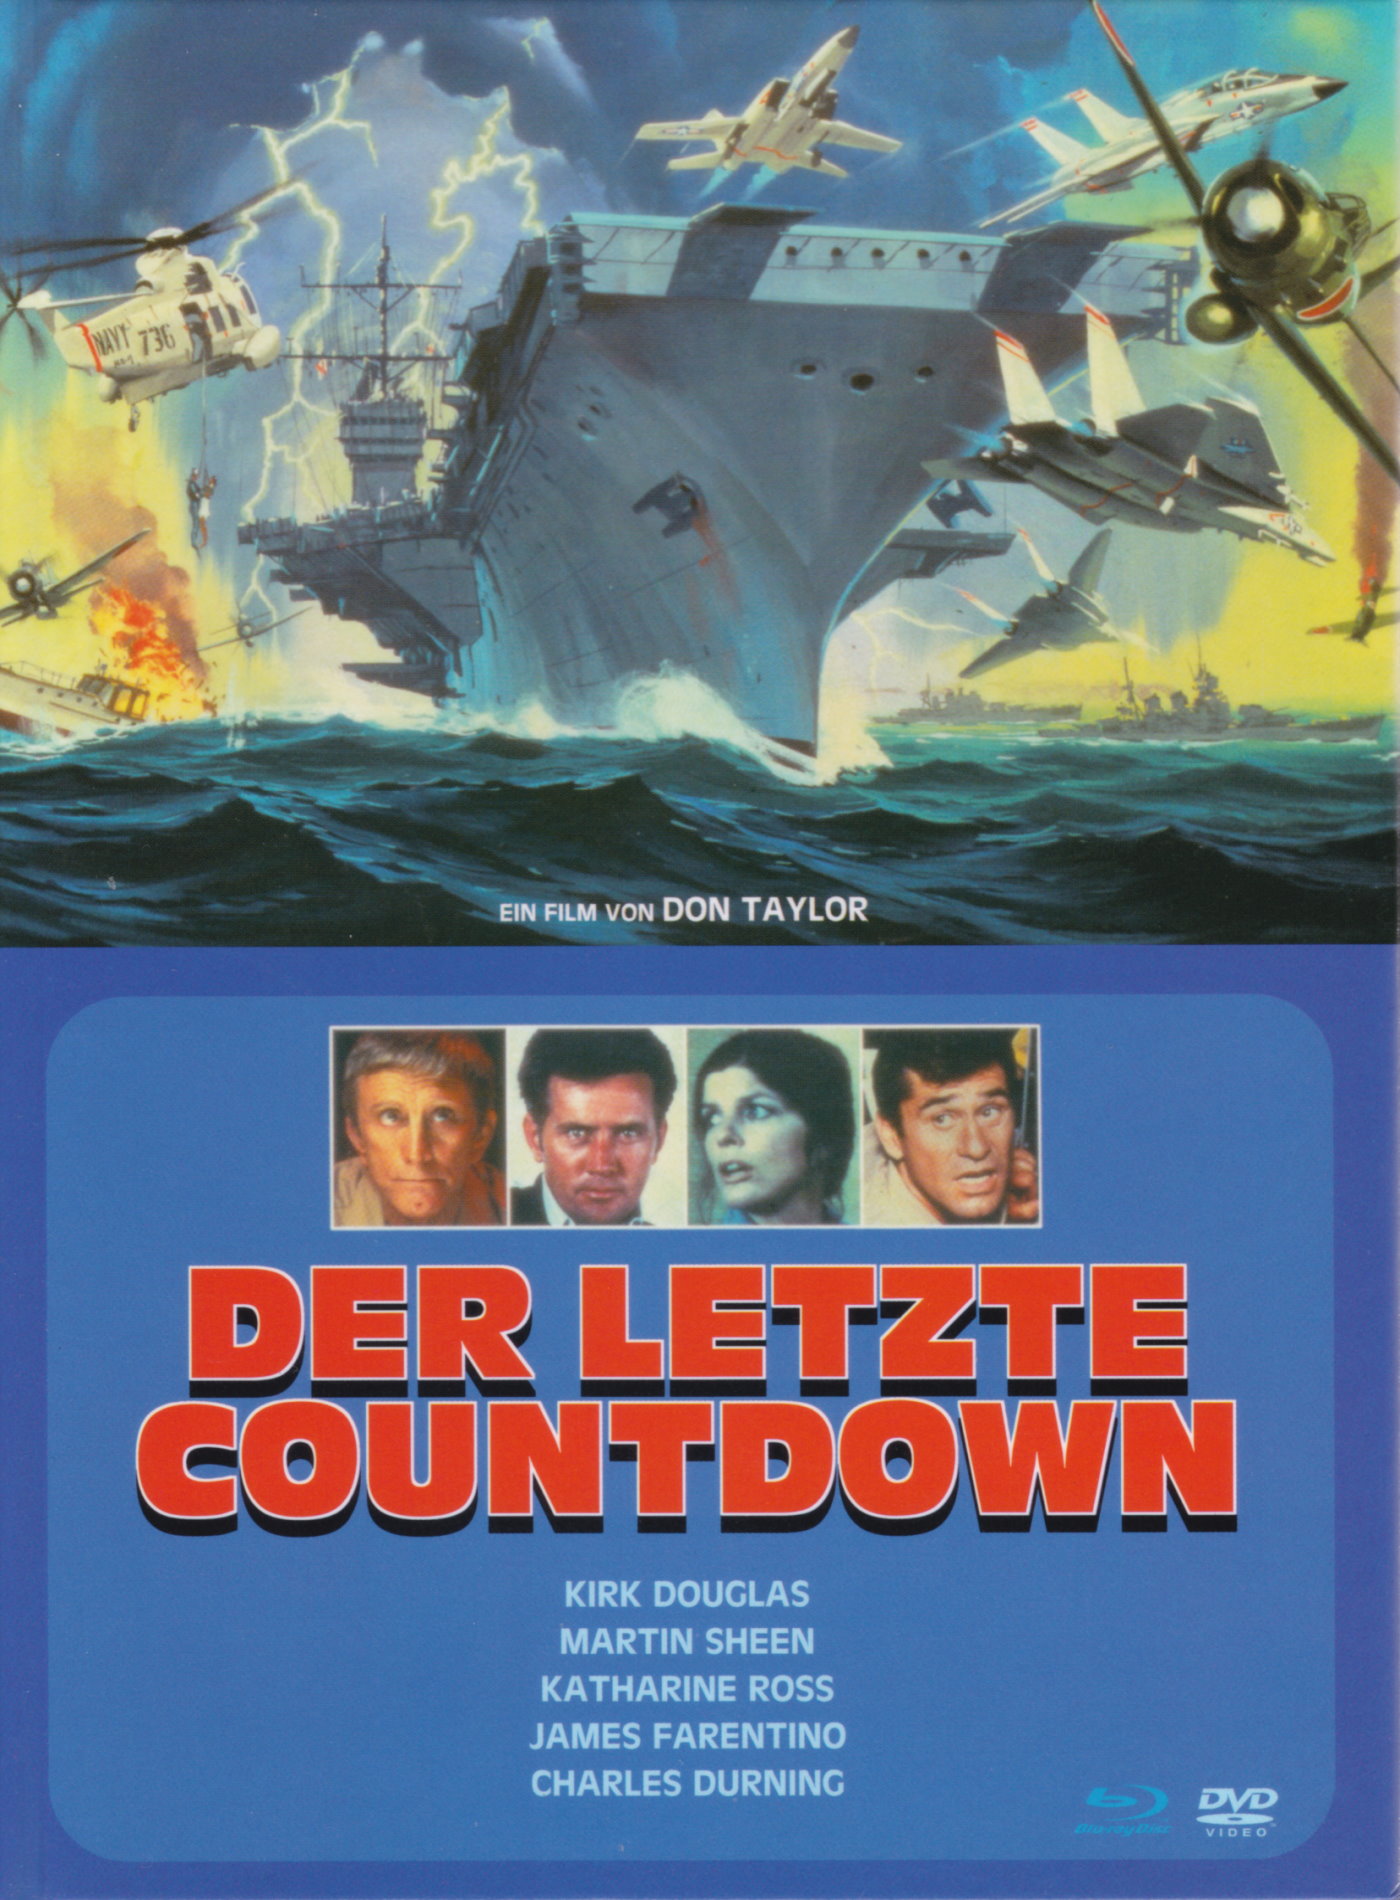 Cover - Der Letzte Countdown.jpg